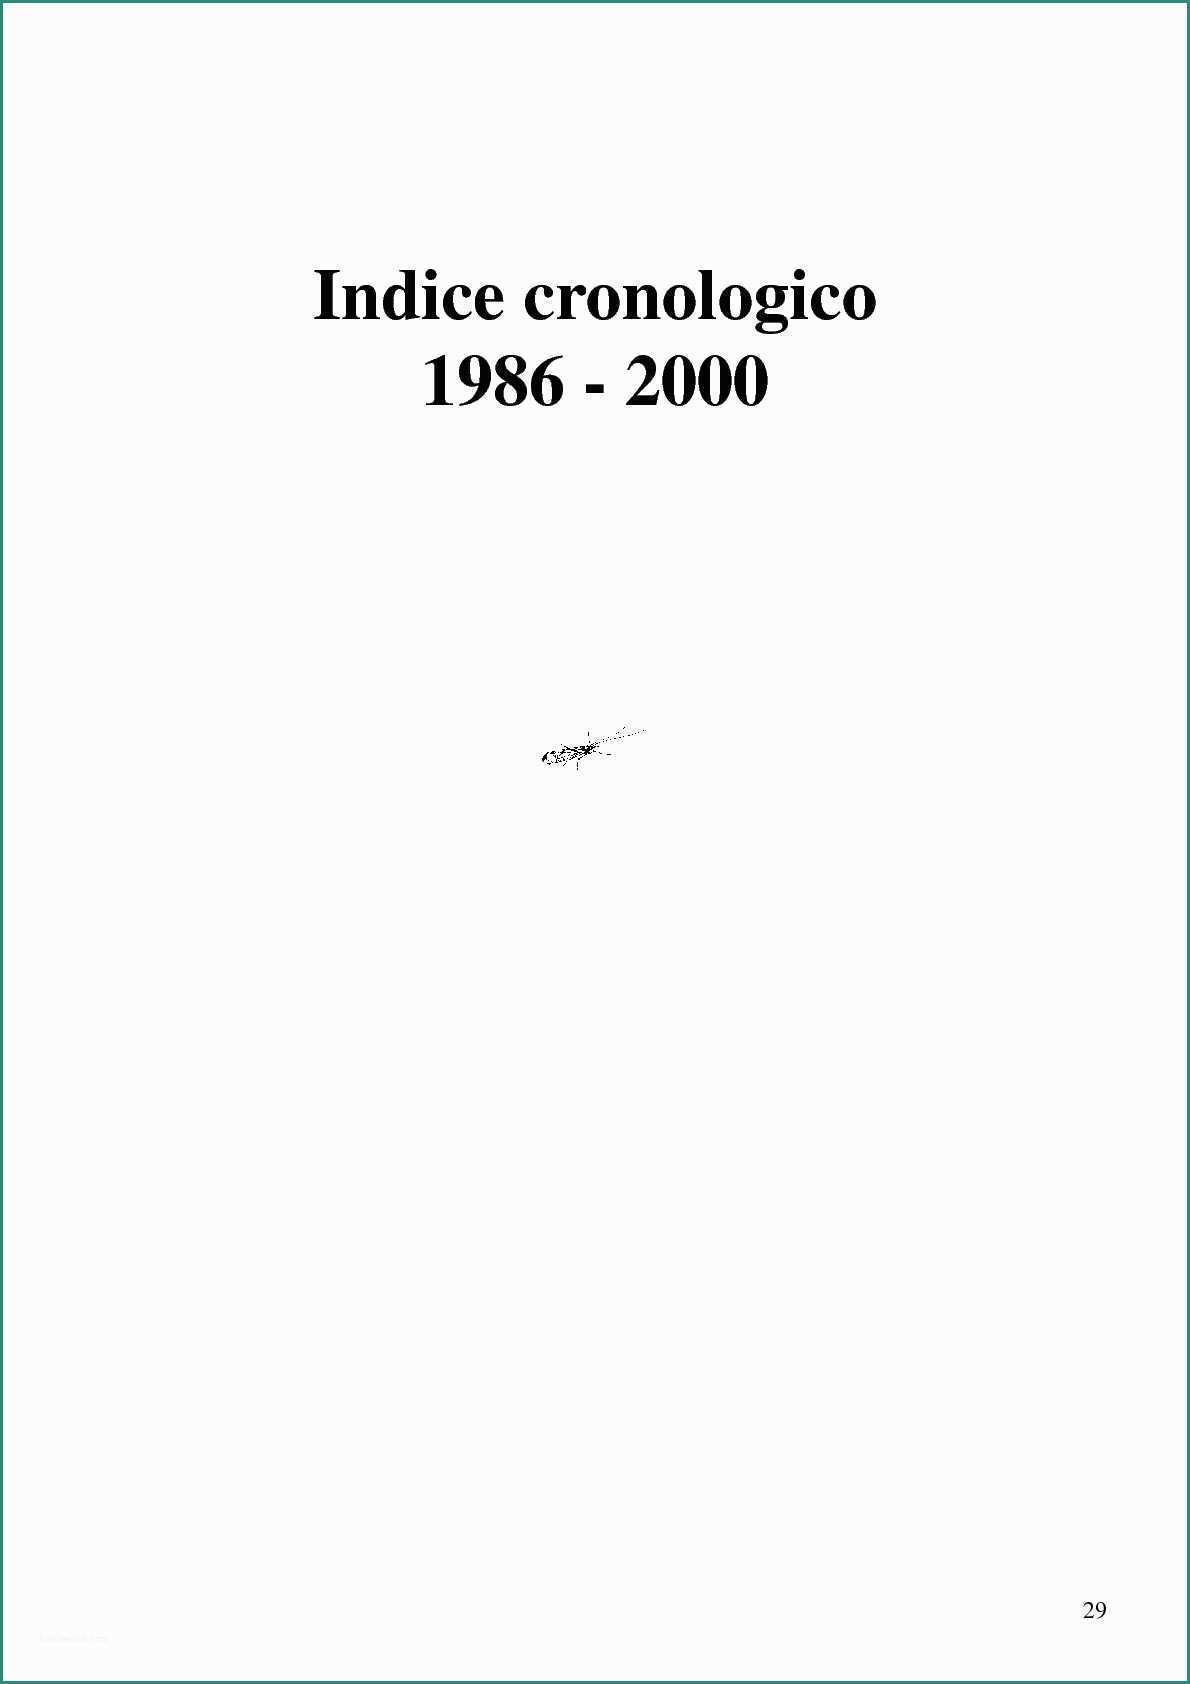 Fossa Imhoff Cemento Prezzi E Calaméo Indice Generale 1986 2000 Cronologico